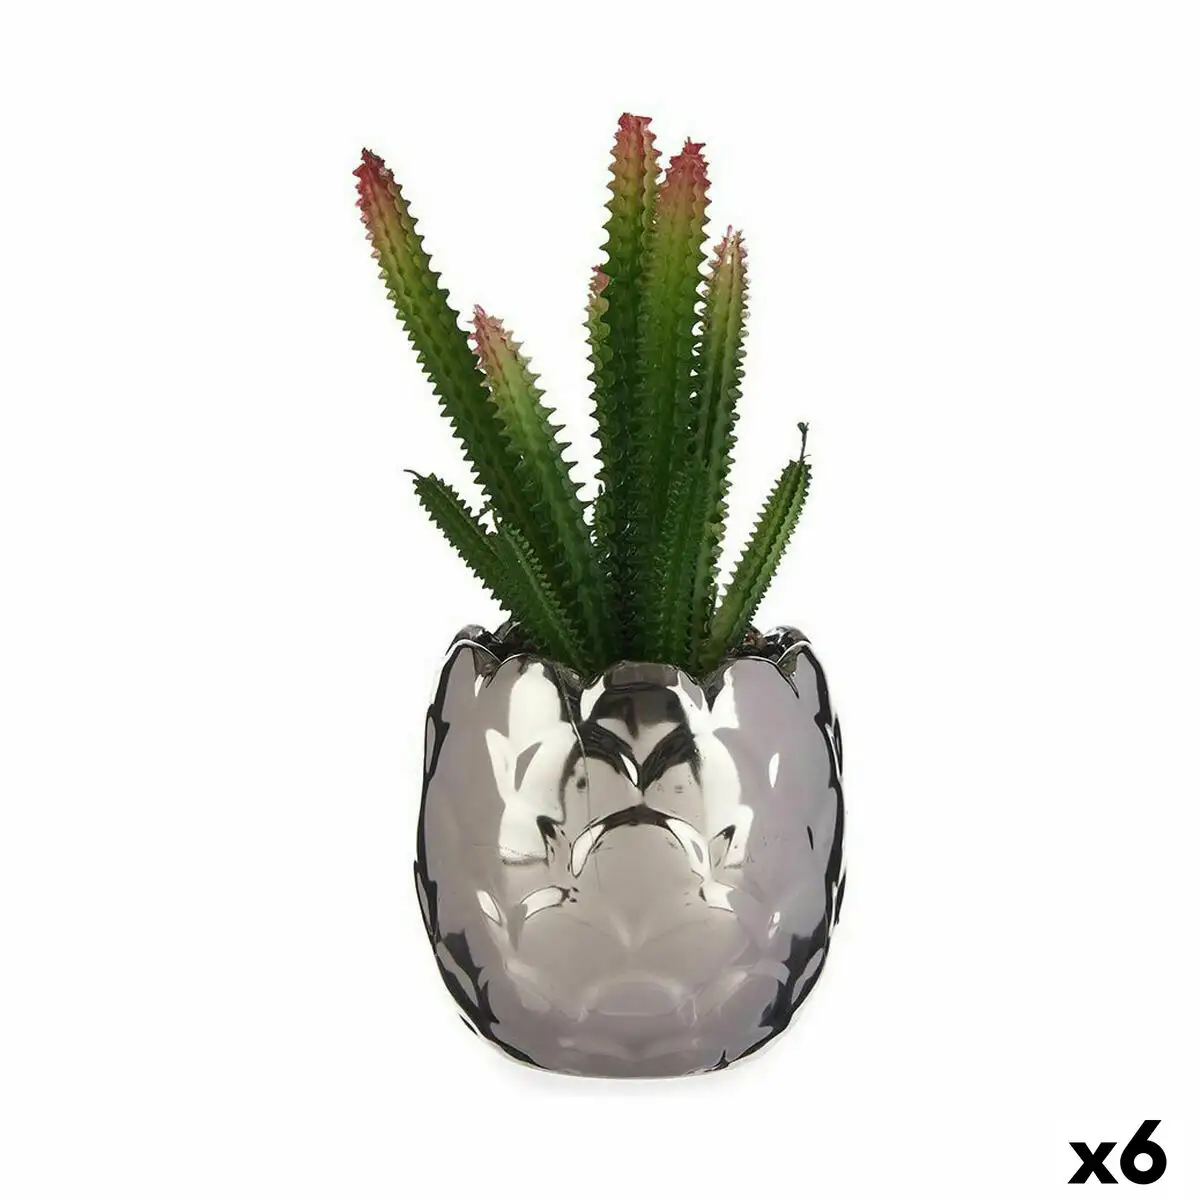 Plante decorative cactus ceramique plastique 10 x 20 x 10 cm 6 unites _4486. Entrez dans le Monde de DIAYTAR SENEGAL - Où la Satisfaction est la Priorité. Explorez notre sélection pensée pour vous offrir une expérience de shopping qui va au-delà de vos attentes.